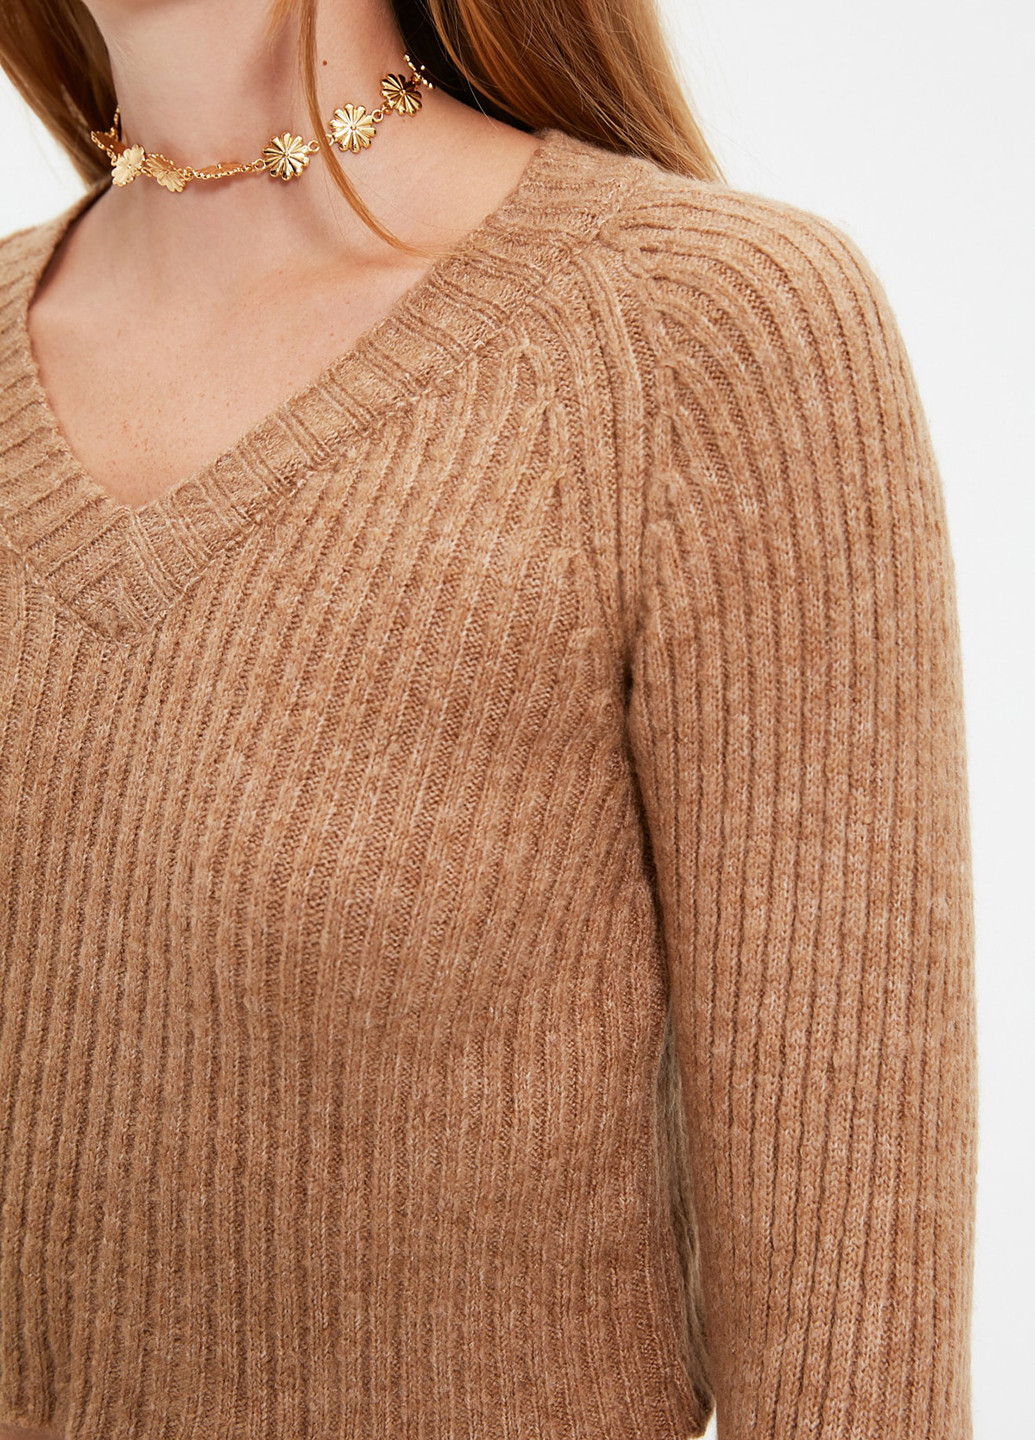 Светло-коричневый демисезонный пуловер пуловер Trendyol